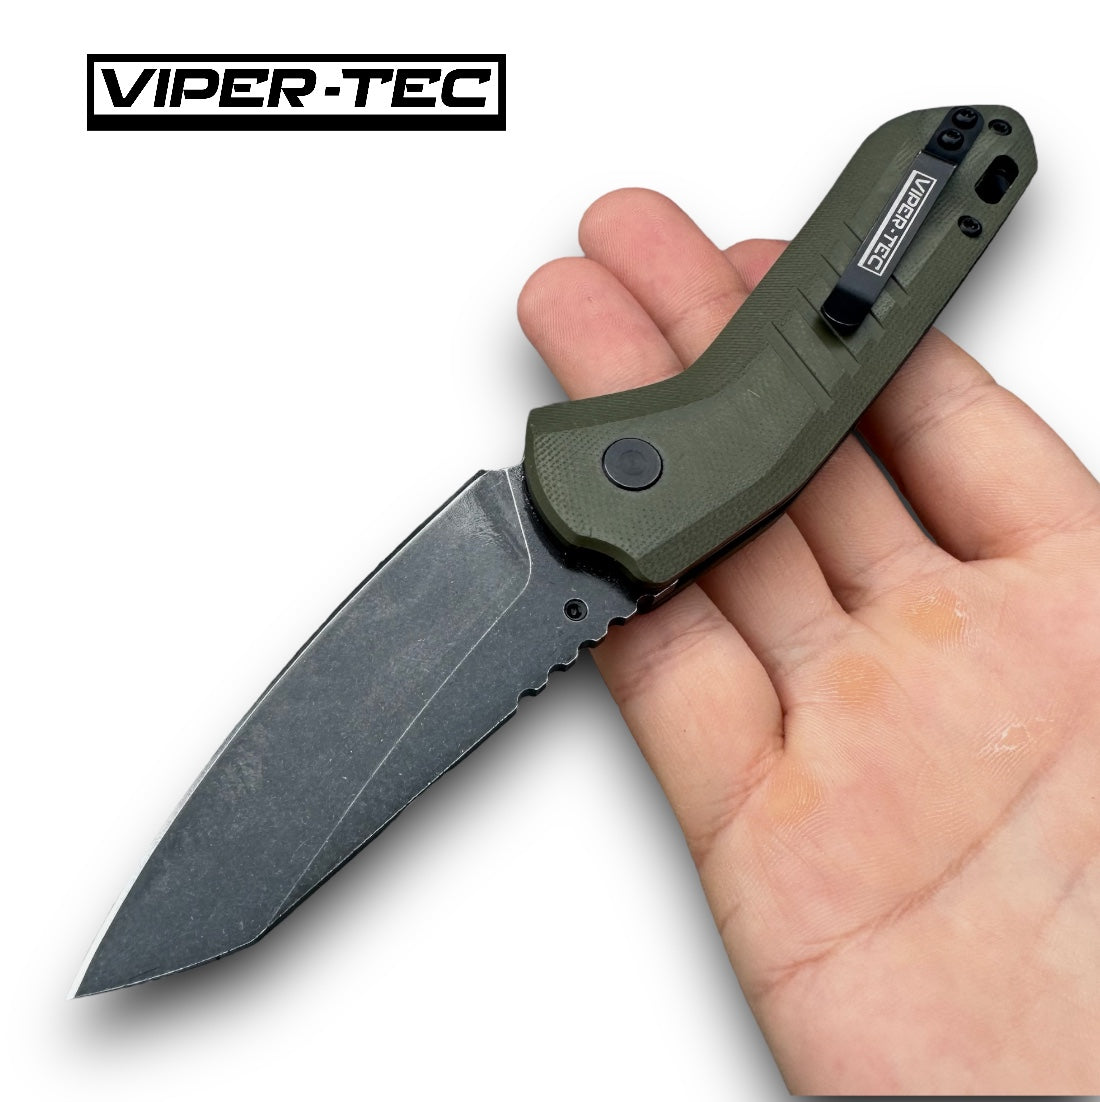 Viper Tec Commando D2 Folding Knife